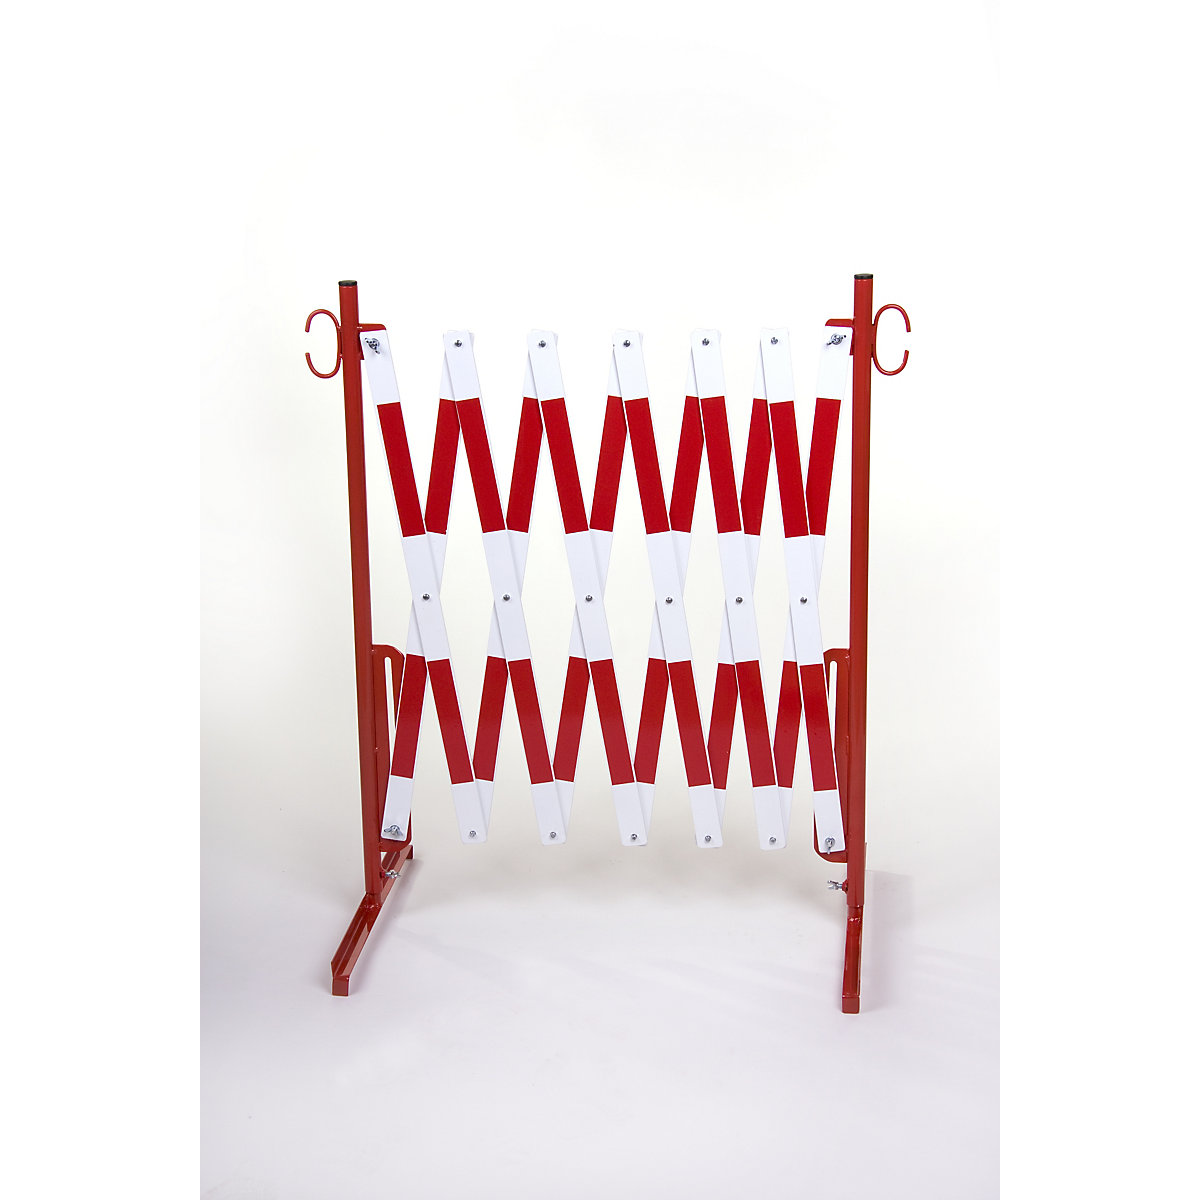 Harmonicaschaar, met 2 voeten, reflecterend, rood / wit, lengte max. 3600 mm